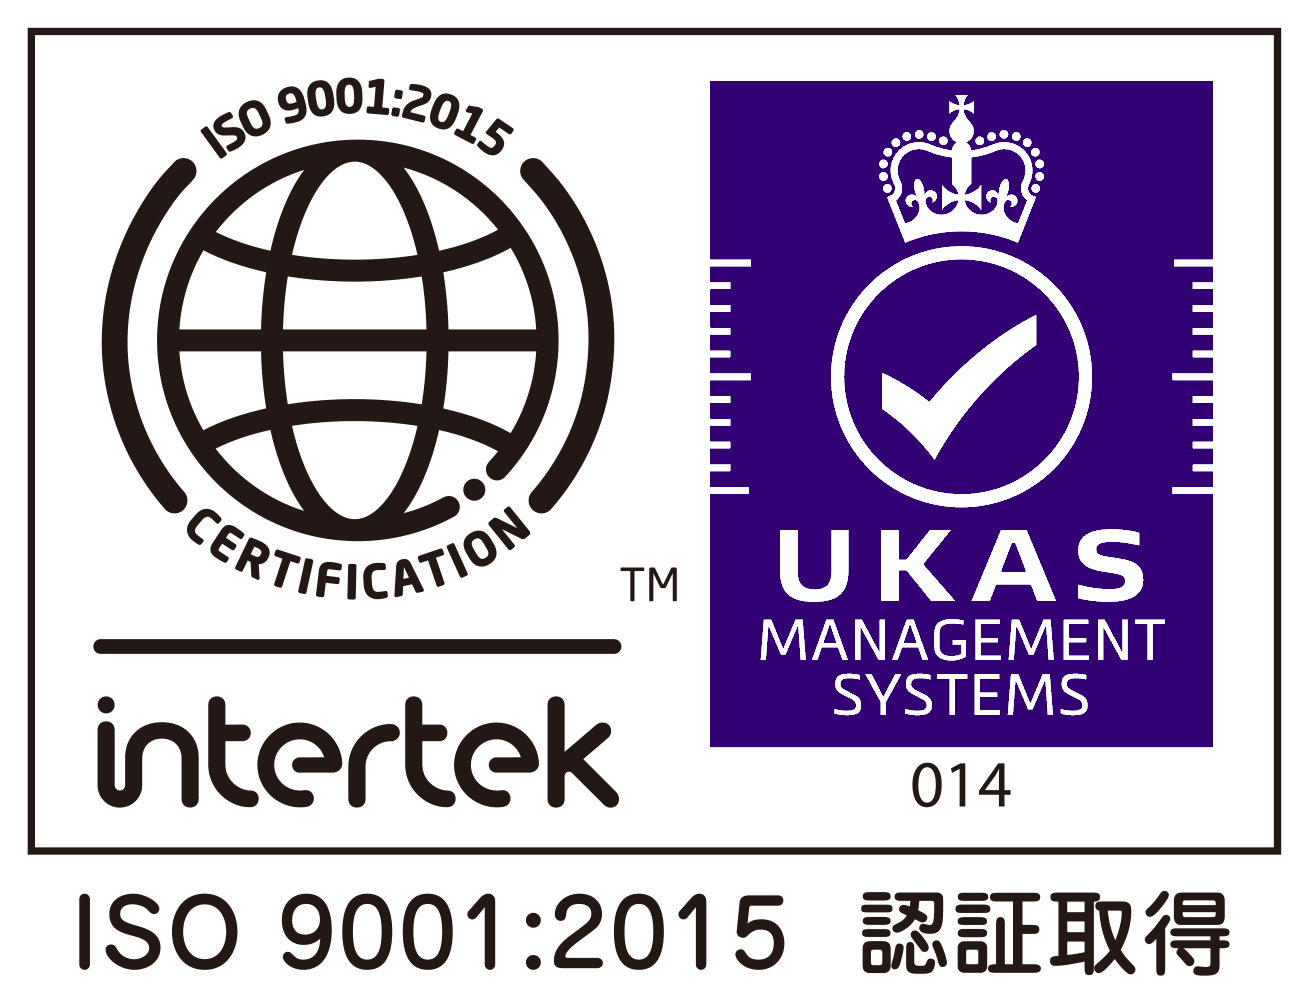 そらまめ星和台介護事業所は、ISO9001:2015認証を取得しています。